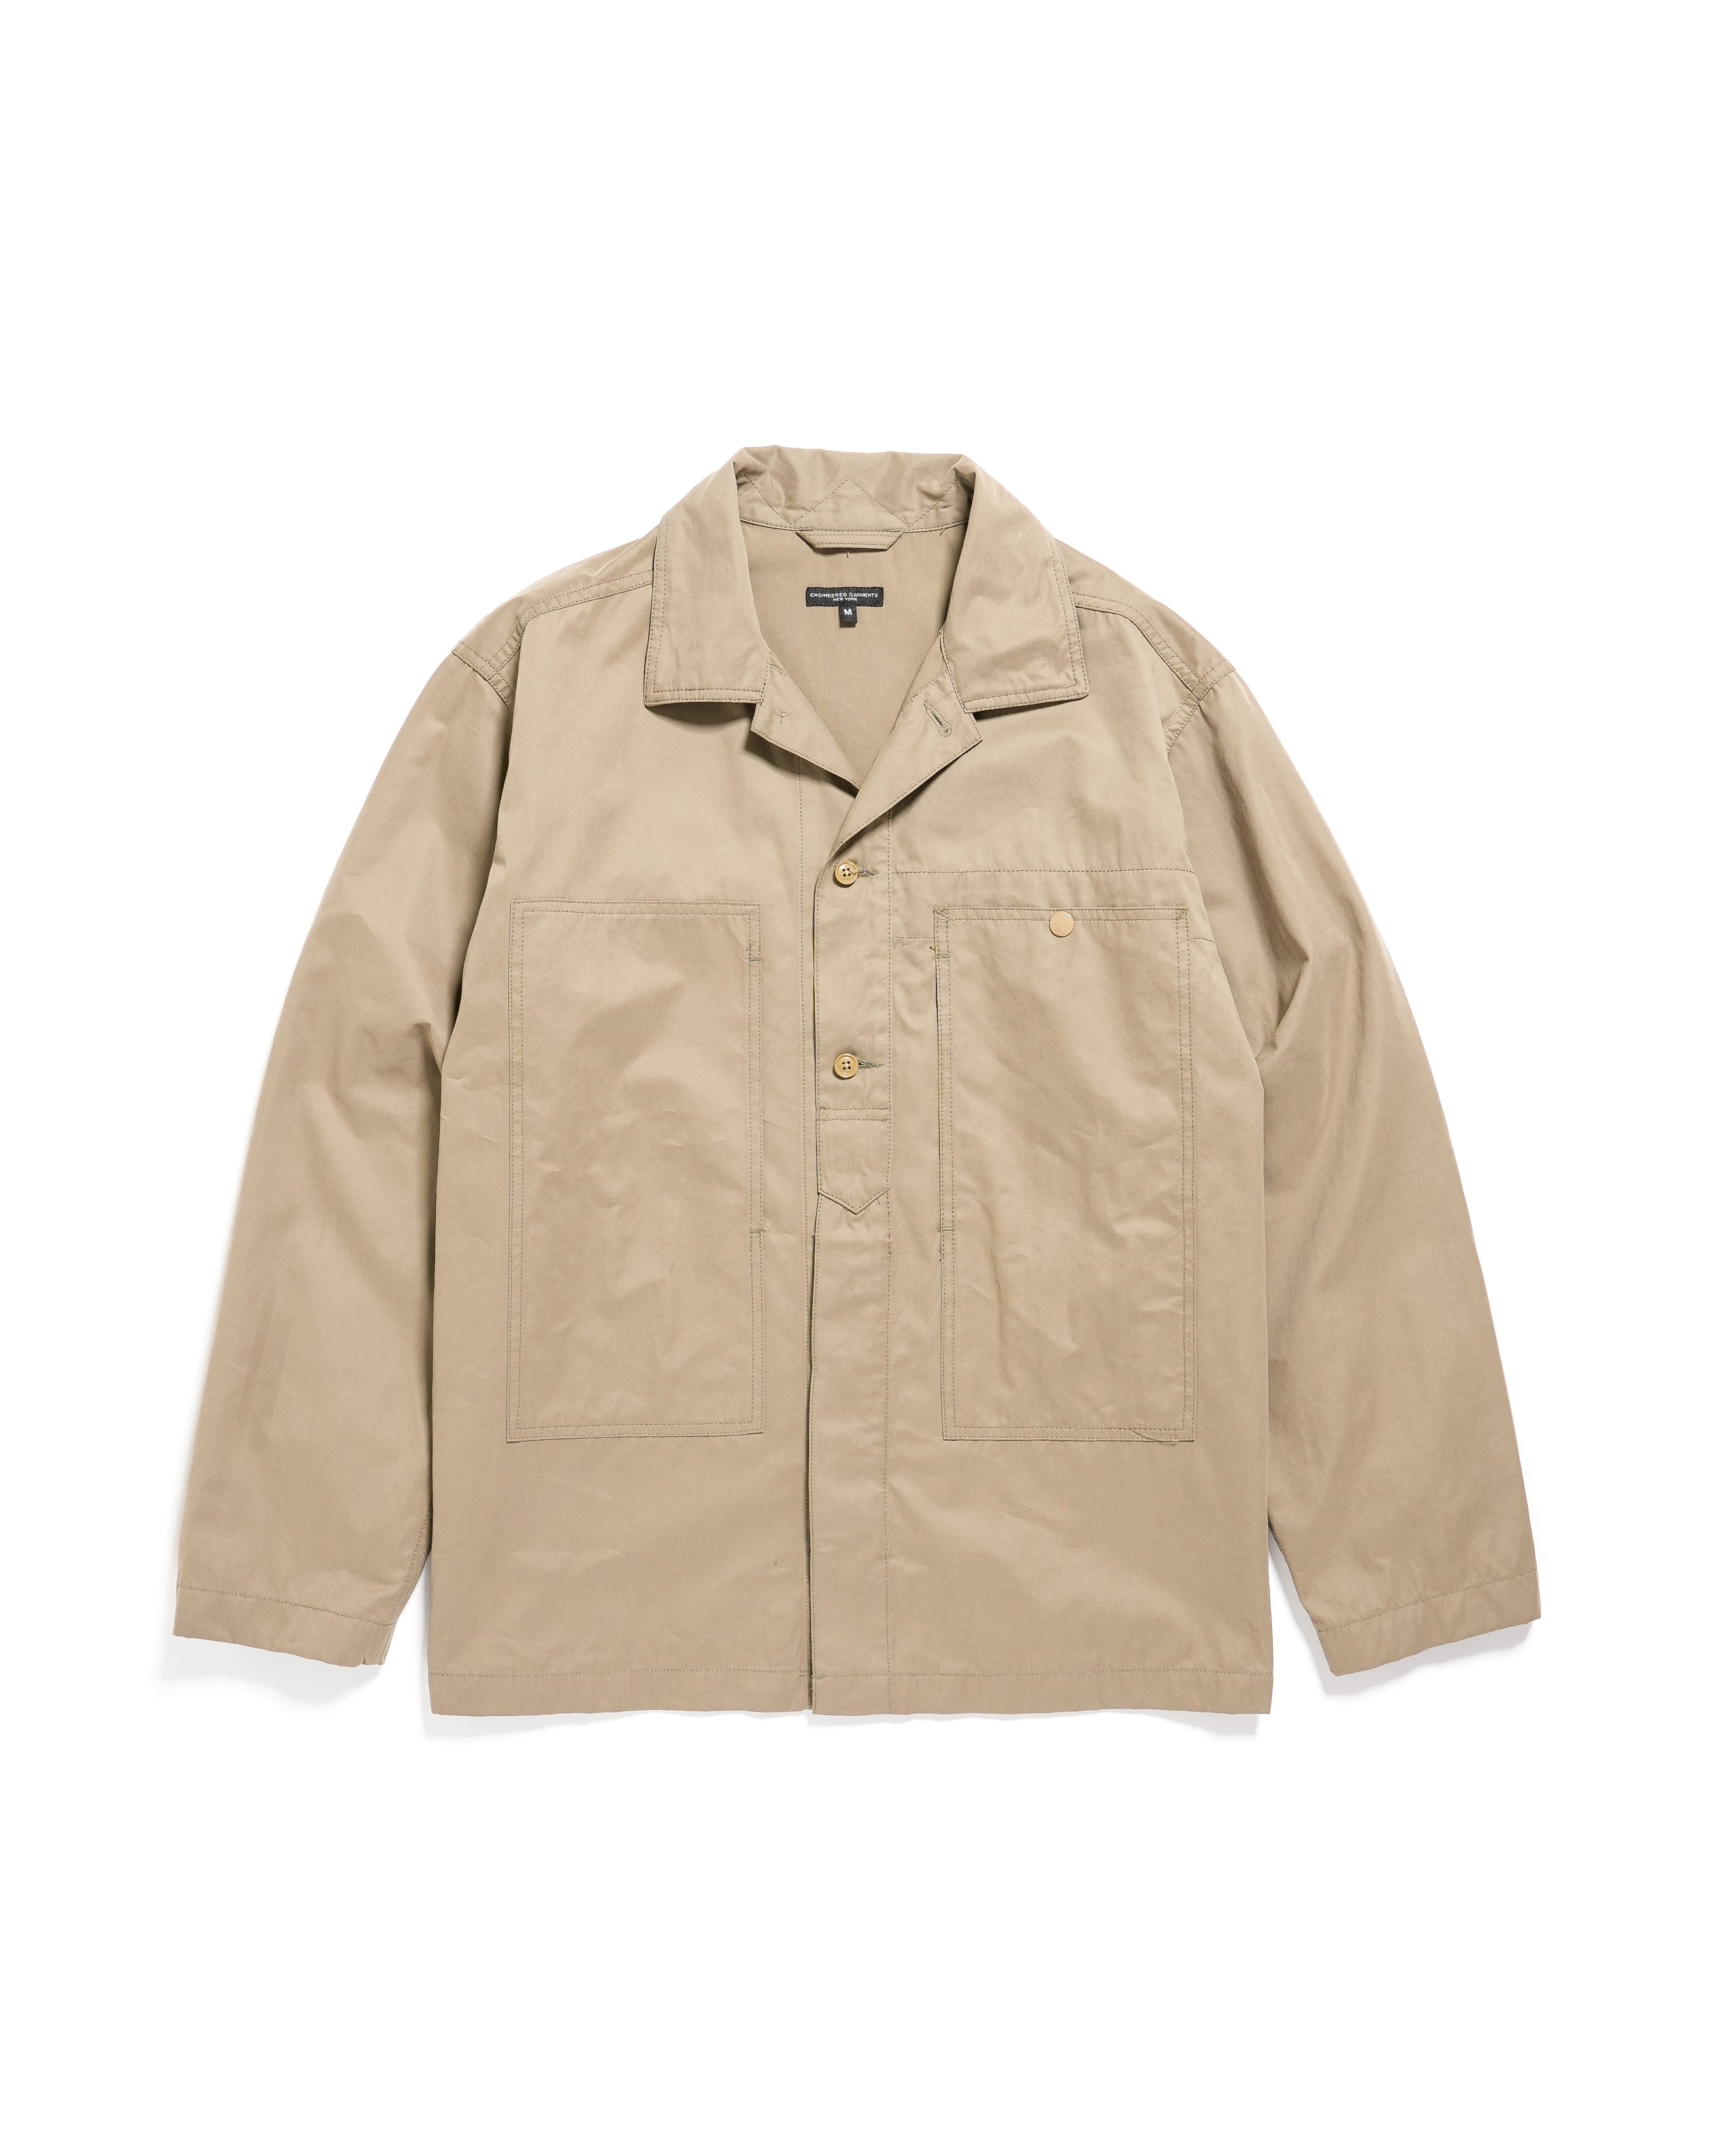 Fatigue Shirt Jacket - Khaki PC Coated Cloth - NNY SP